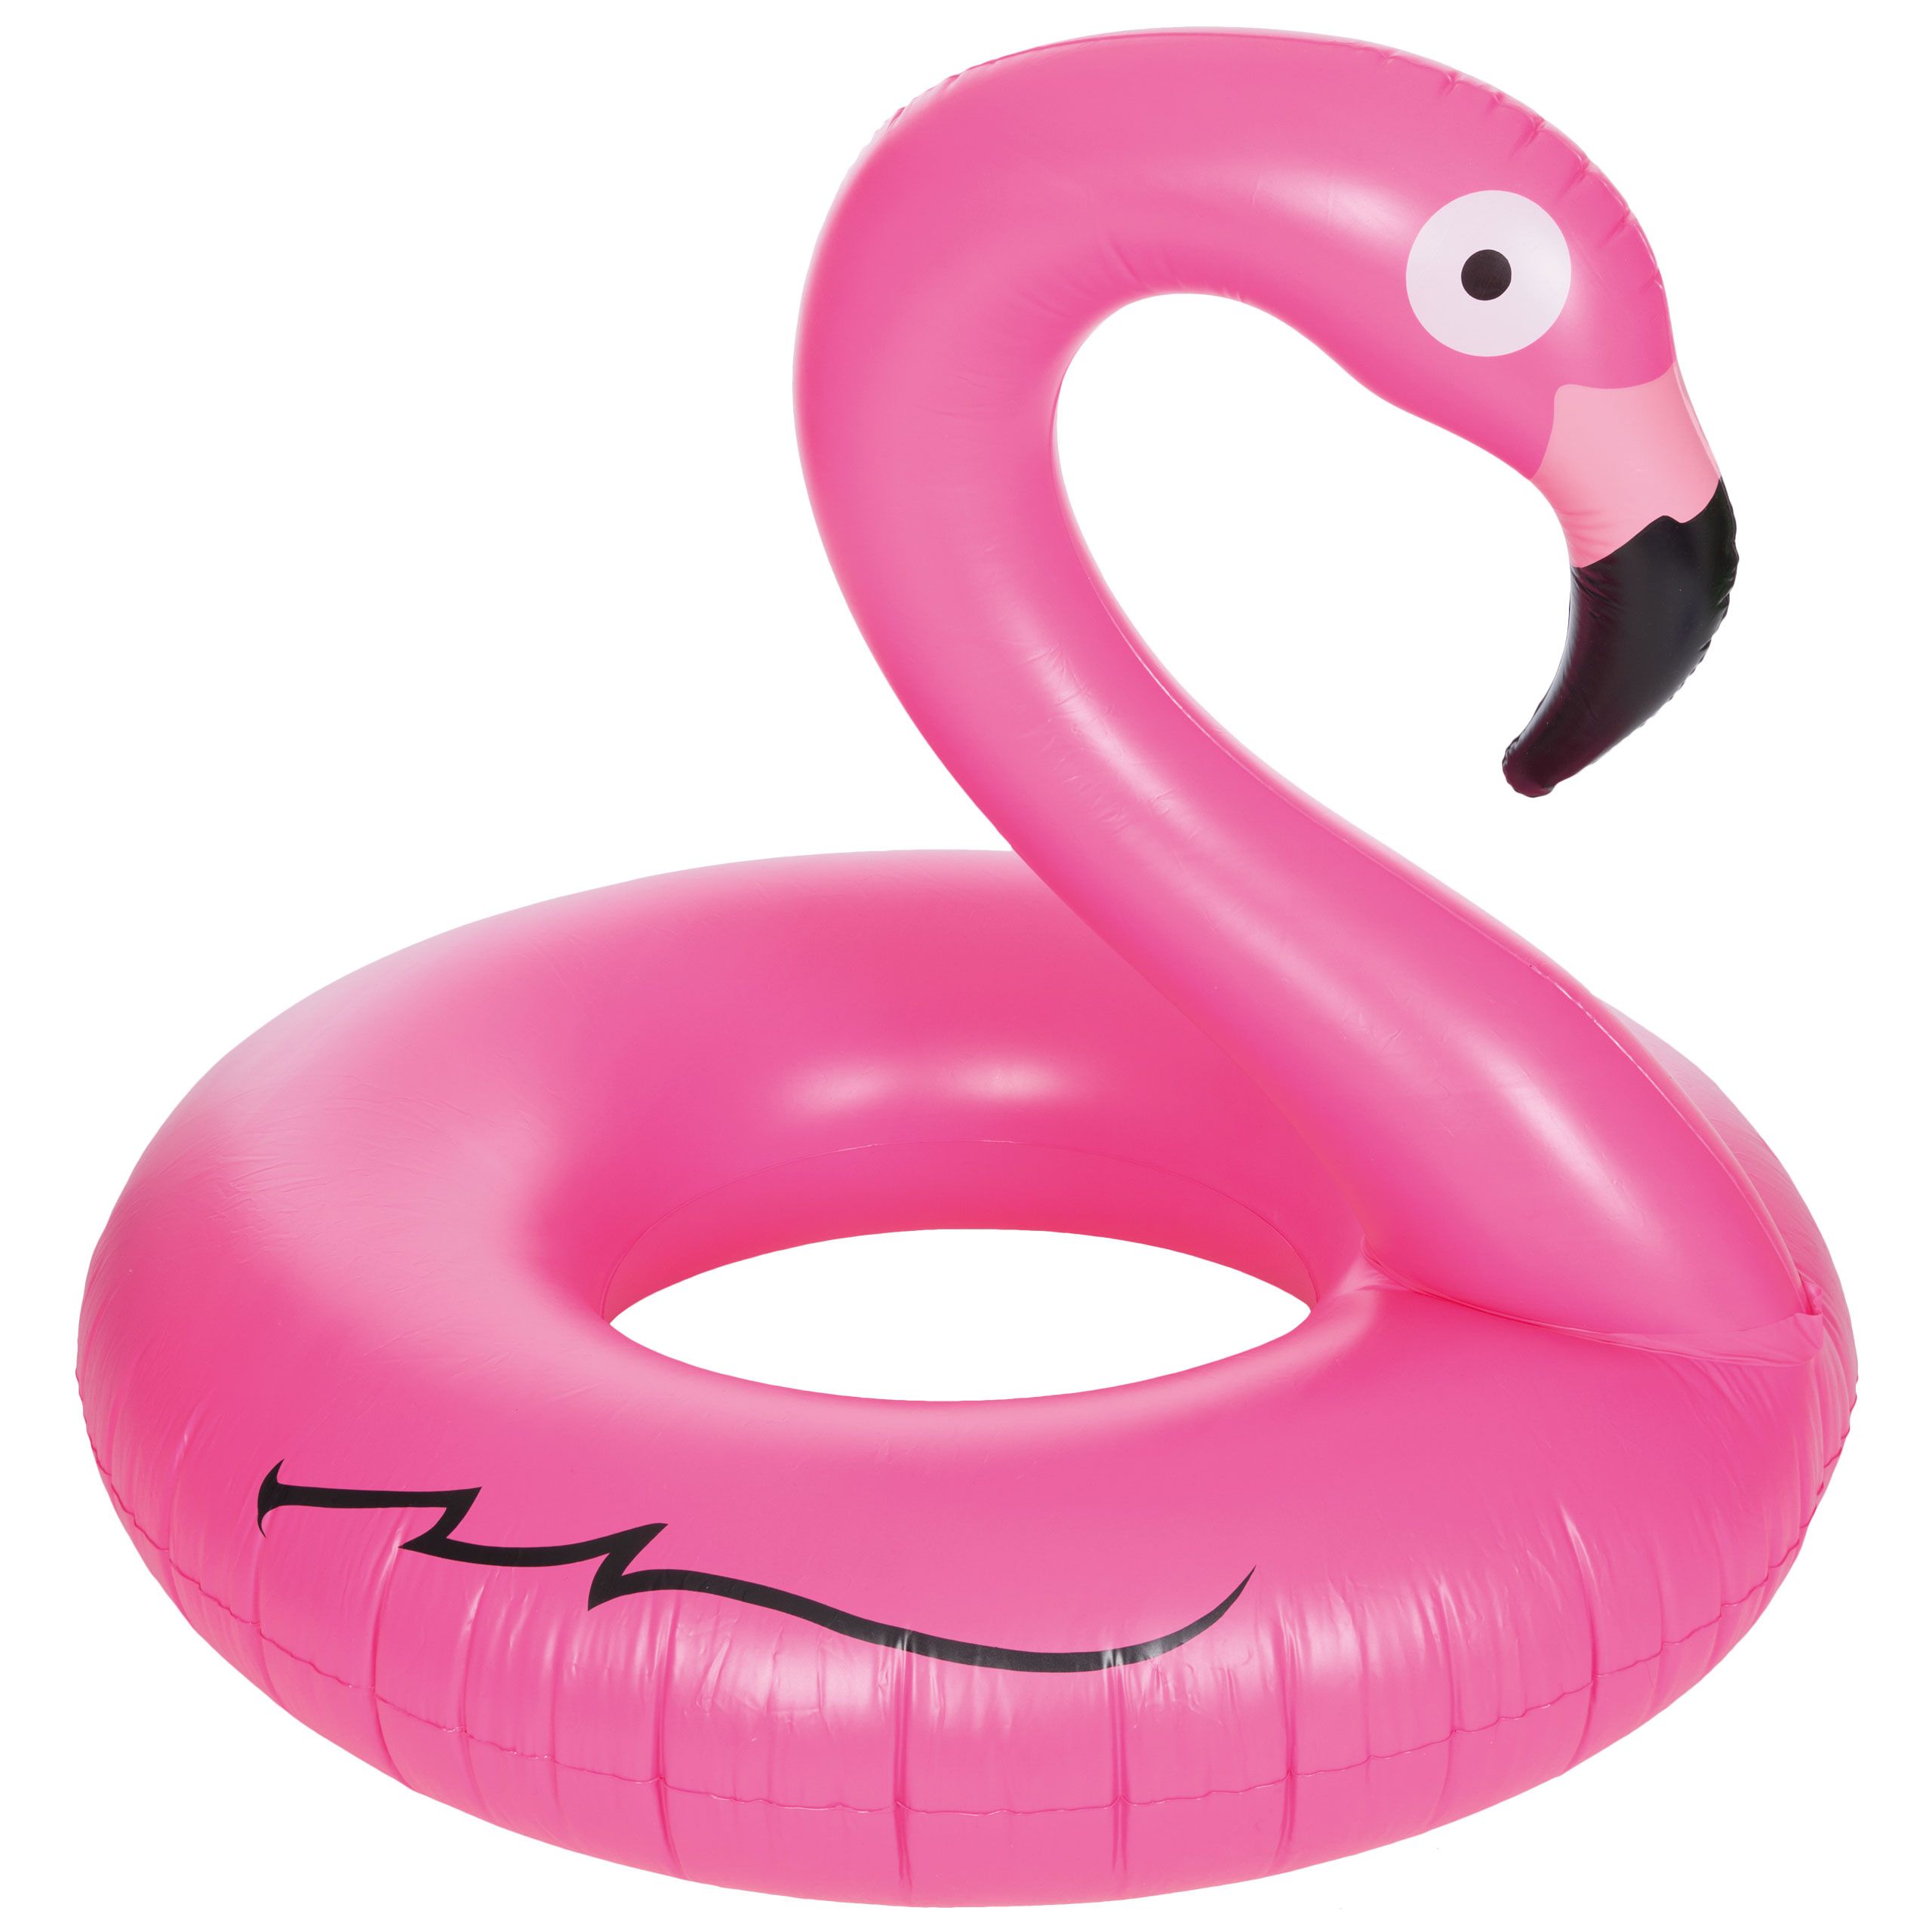 Inflatable Flamingo Novelty Swim Ring